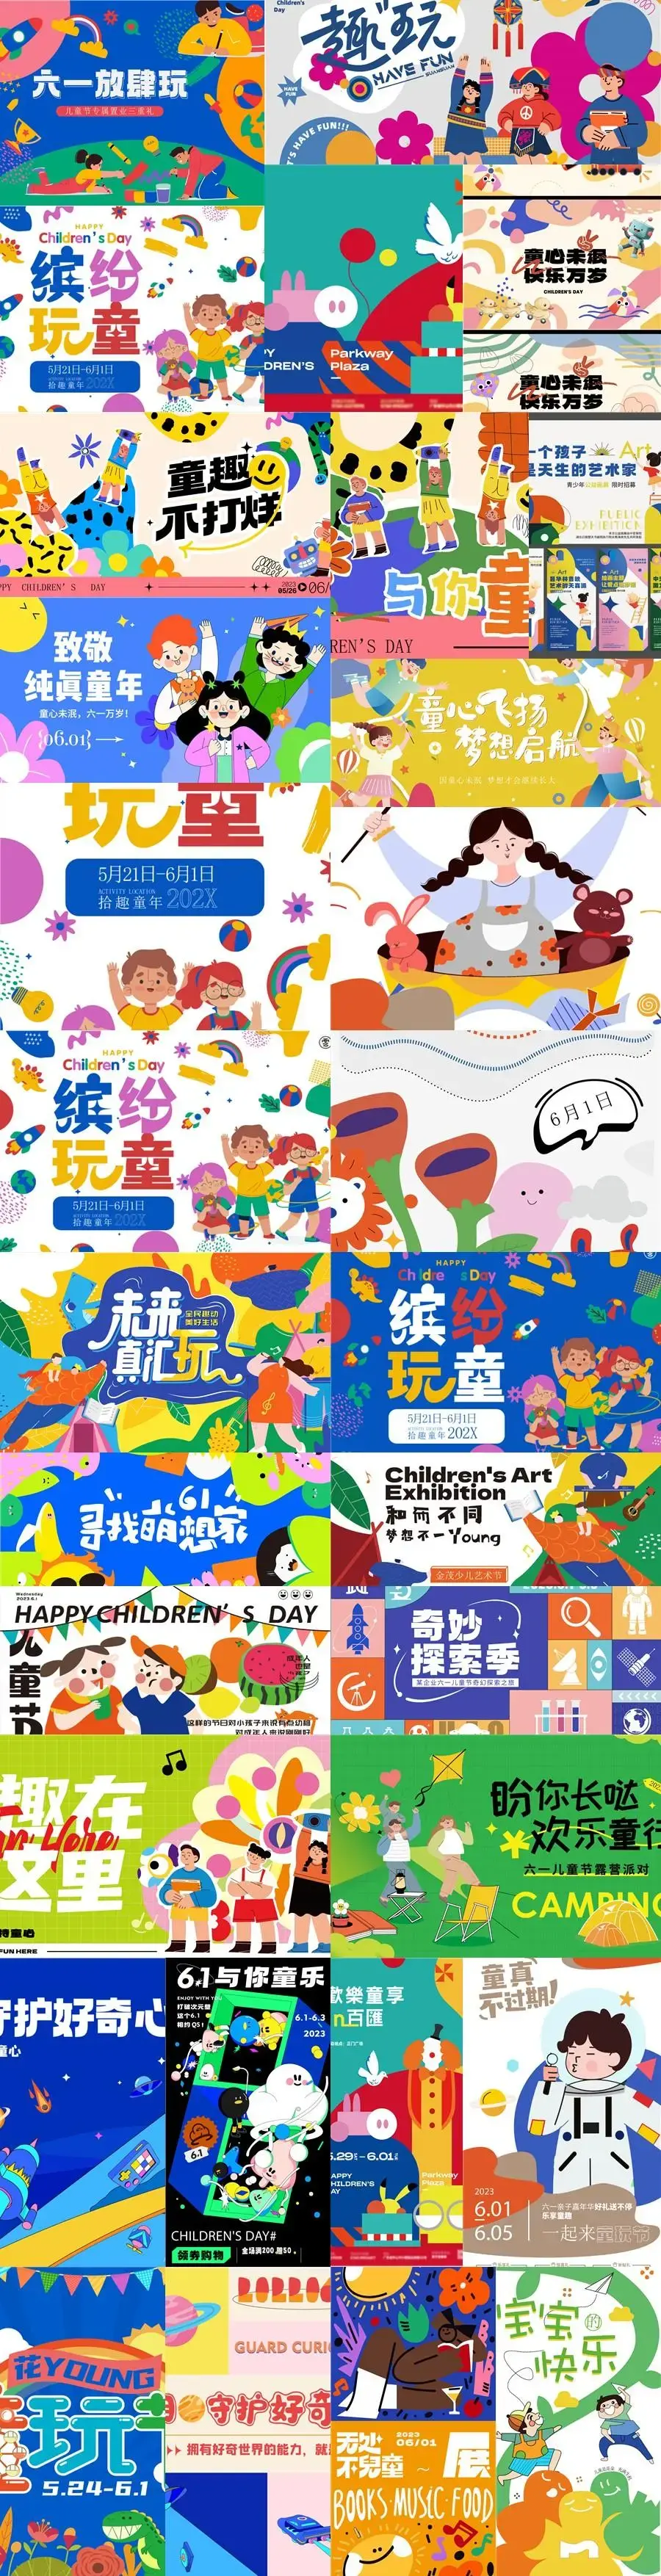 六一儿童节艺术活动插画海报展板游乐场亲子夏令营AI矢量设计素材-爱设计爱分享c